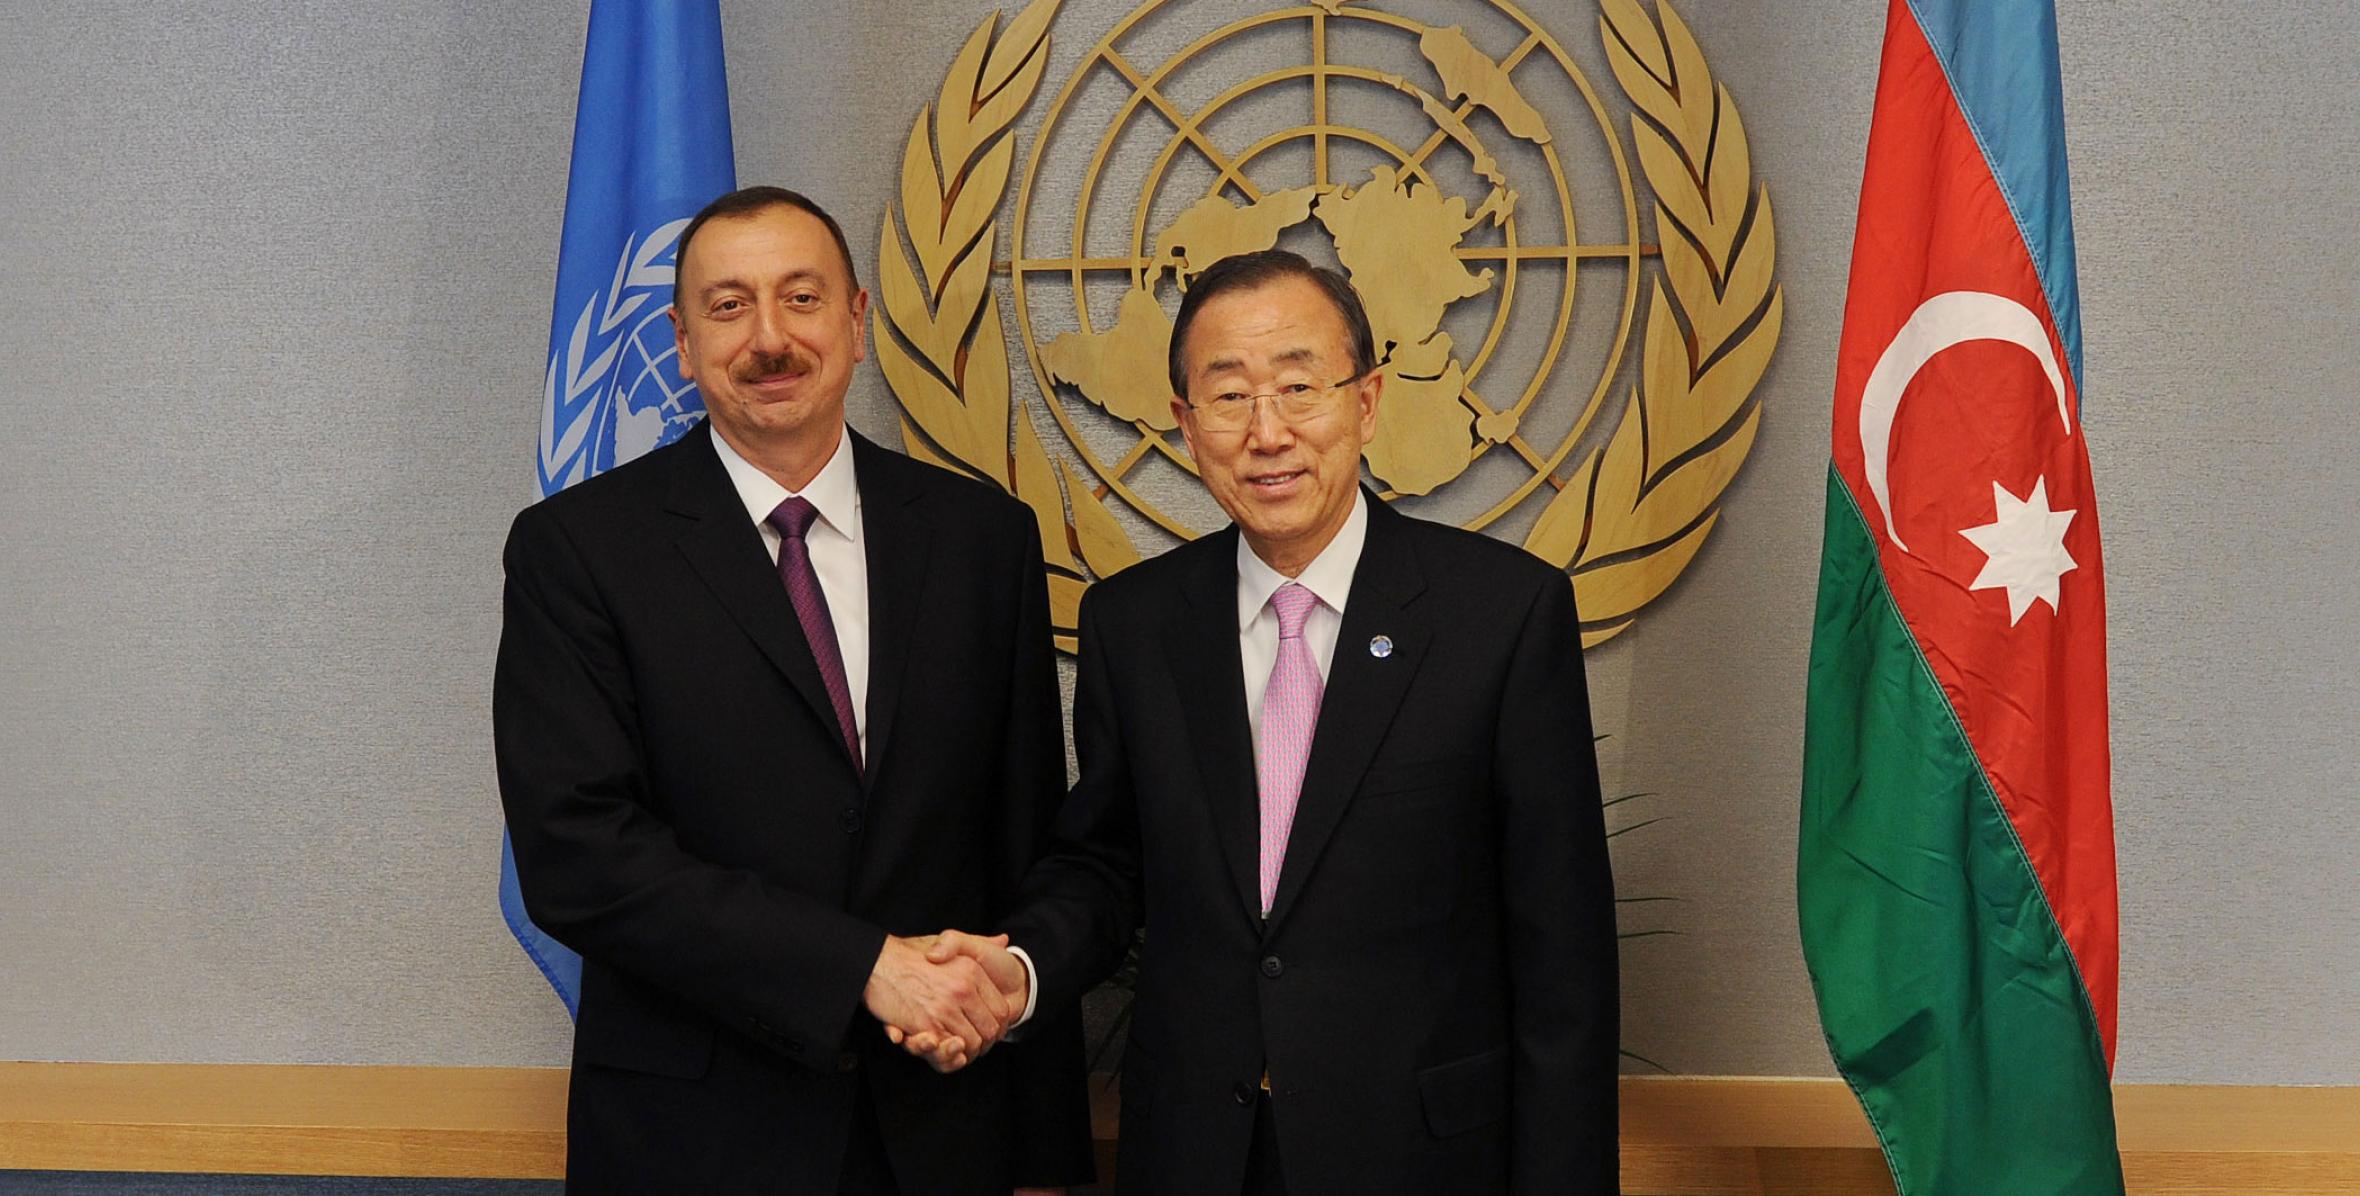 Ильхам Алиев встретился в Нью-Йорке с генеральным секретарем ООН Пан Ги Муном